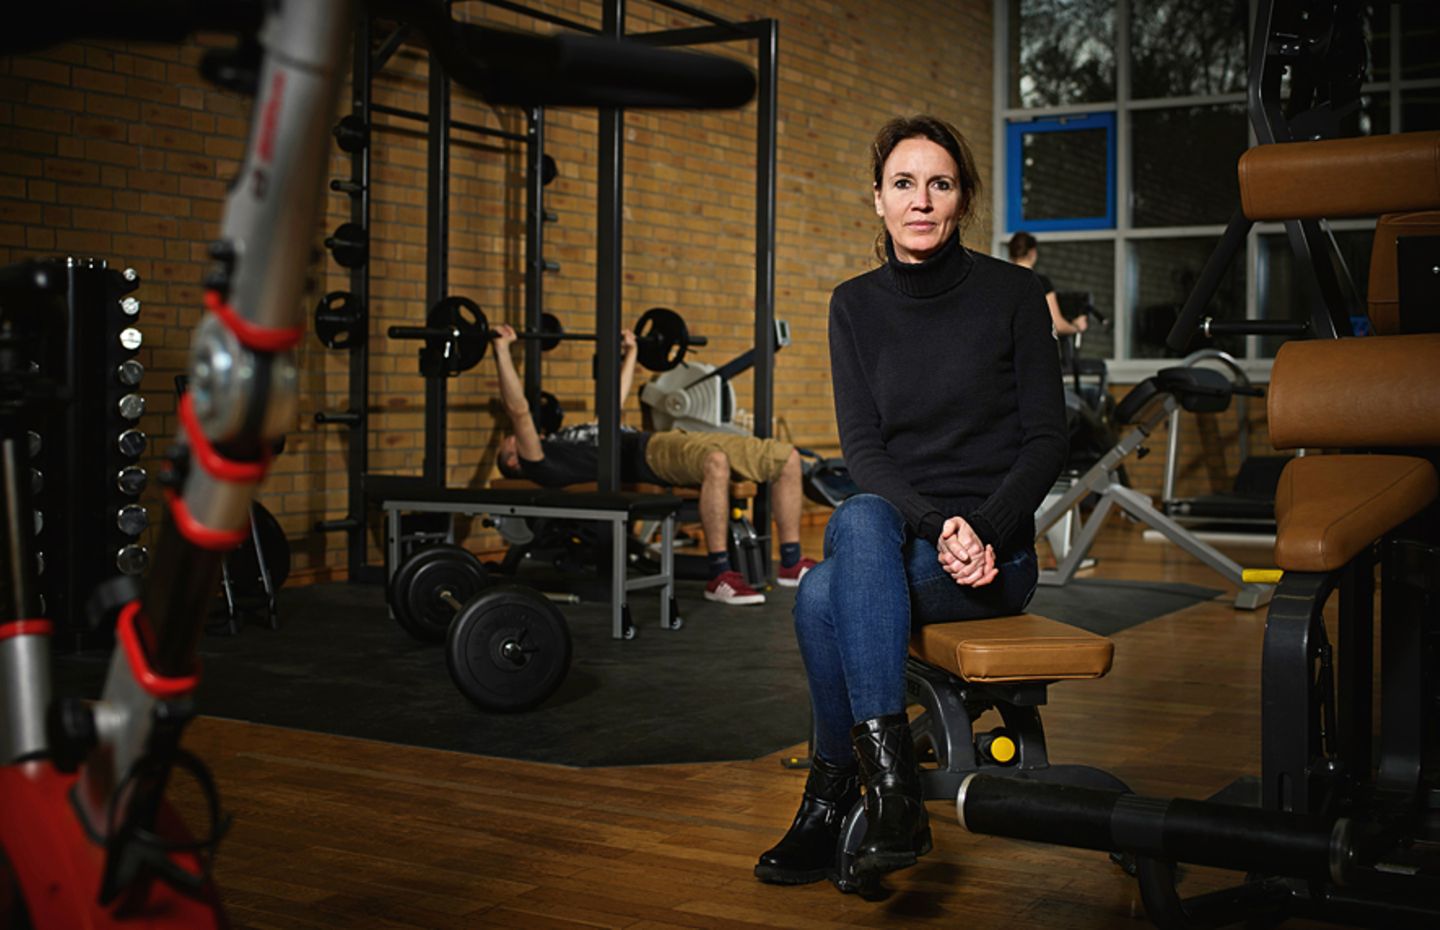 Sport: Prof. Christine Graf ist Sportwissenschaftlerin und Medizinerin an der Deutschen Sporthochschule in Köln. Dort erforscht sie, wie sich Ernährung und Sport auf unsere Gesundheit auswirken